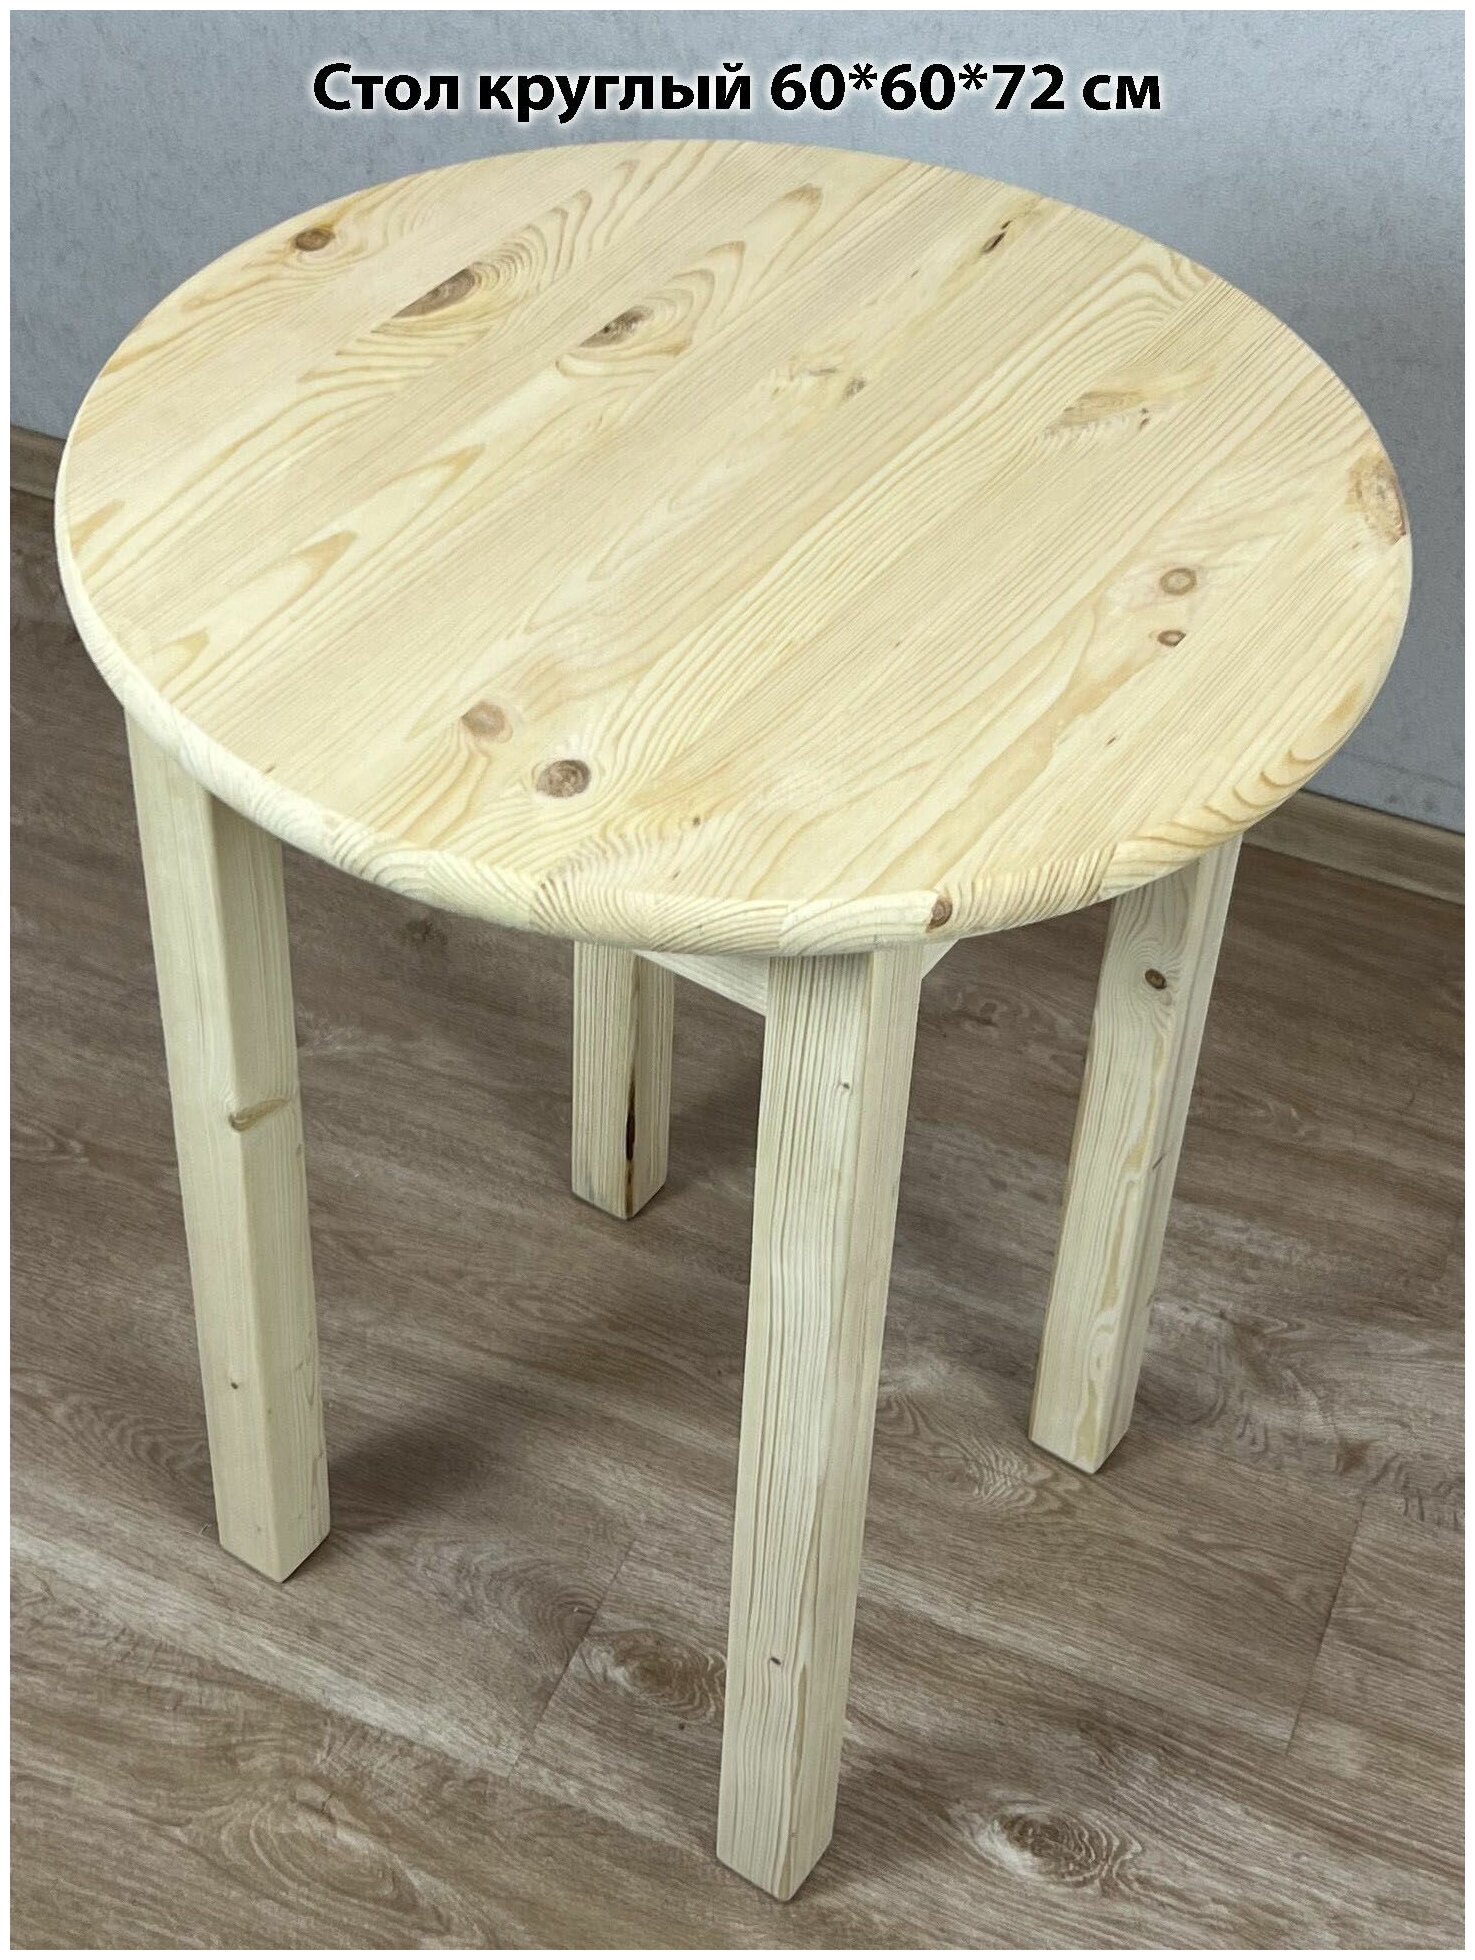 Стол кухонный эконом круглый деревянный